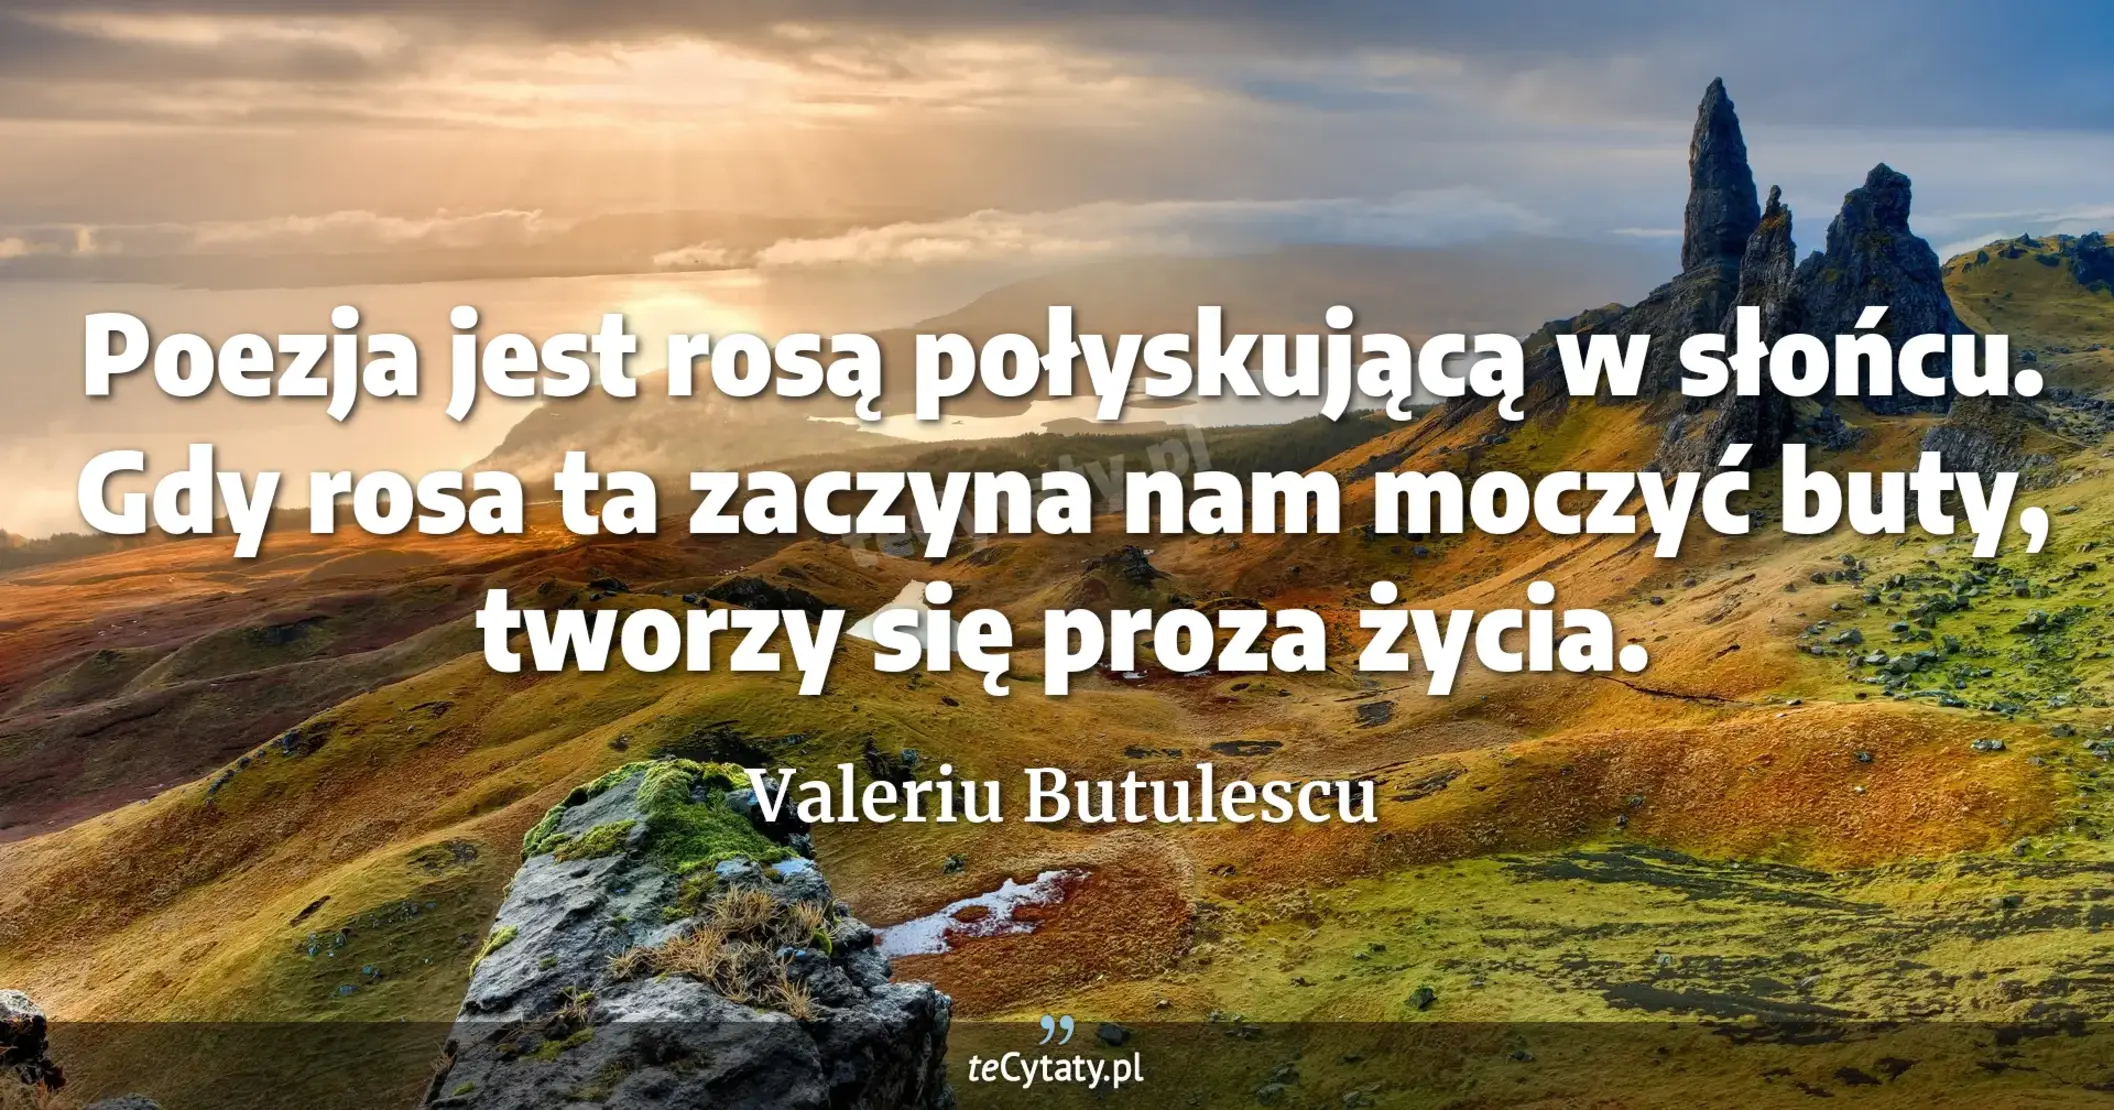 Poezja jest rosą połyskującą w słońcu. Gdy rosa ta zaczyna nam moczyć buty, tworzy się proza życia. - Valeriu Butulescu